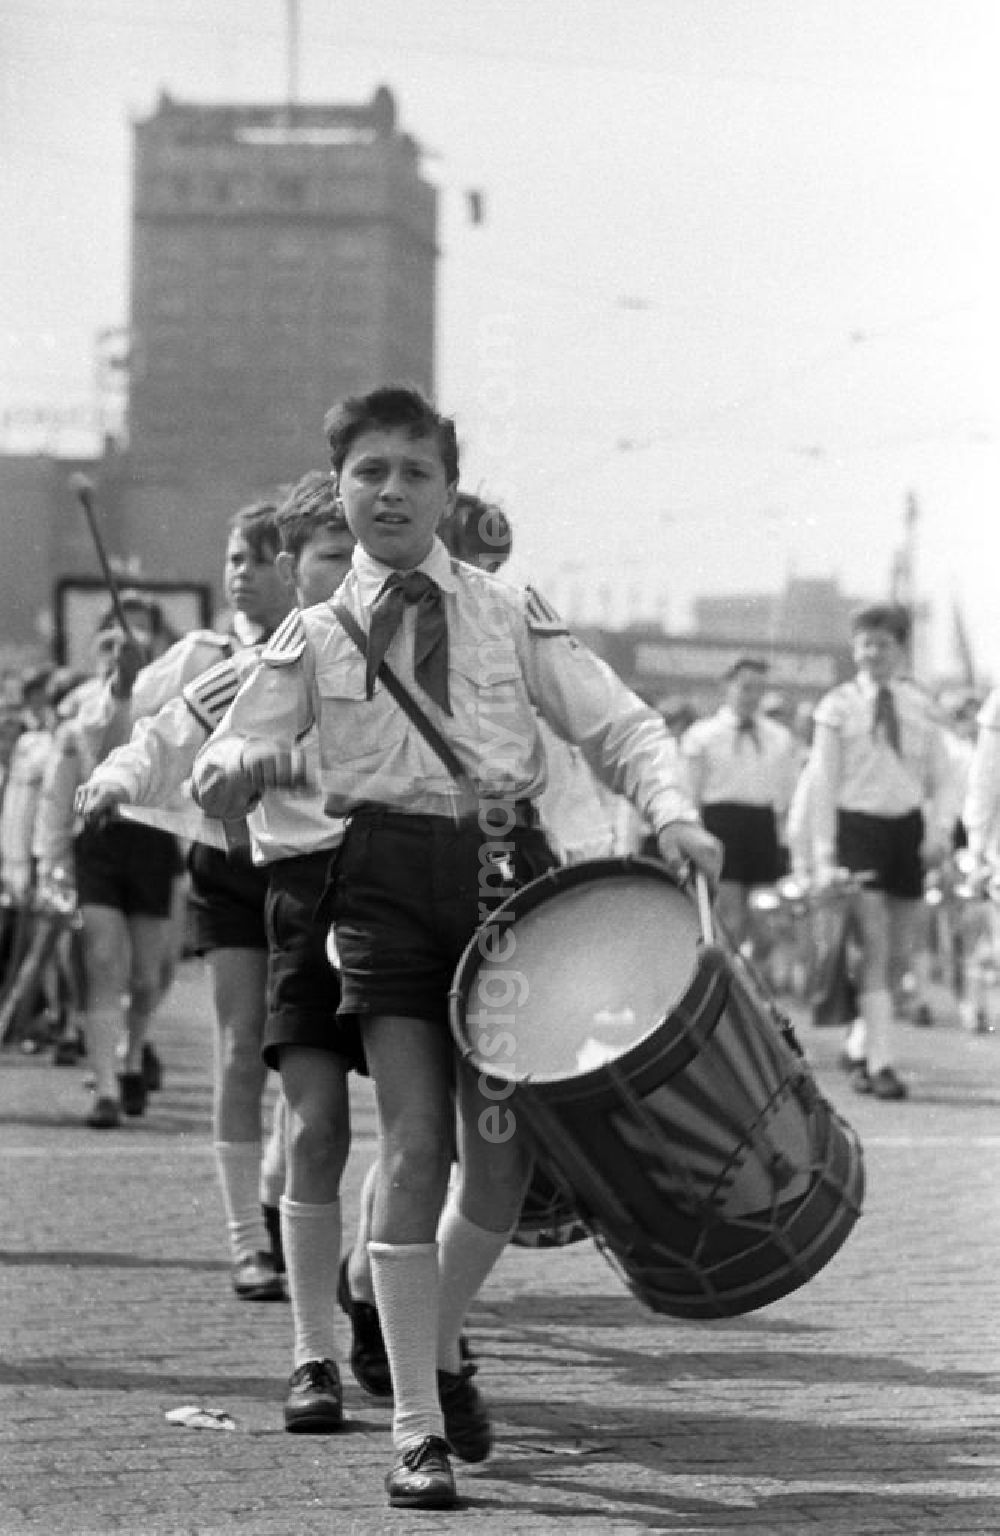 GDR image archive: Leipzig - Ein Musikkorps der Jungen Pioniere nimmt an der Demonstration zum 1. Mai 1958 in Leipzig teil, hier ein Junge mit einer großen Trommel, einem Symbol der Pionierorganisation in der DDR.